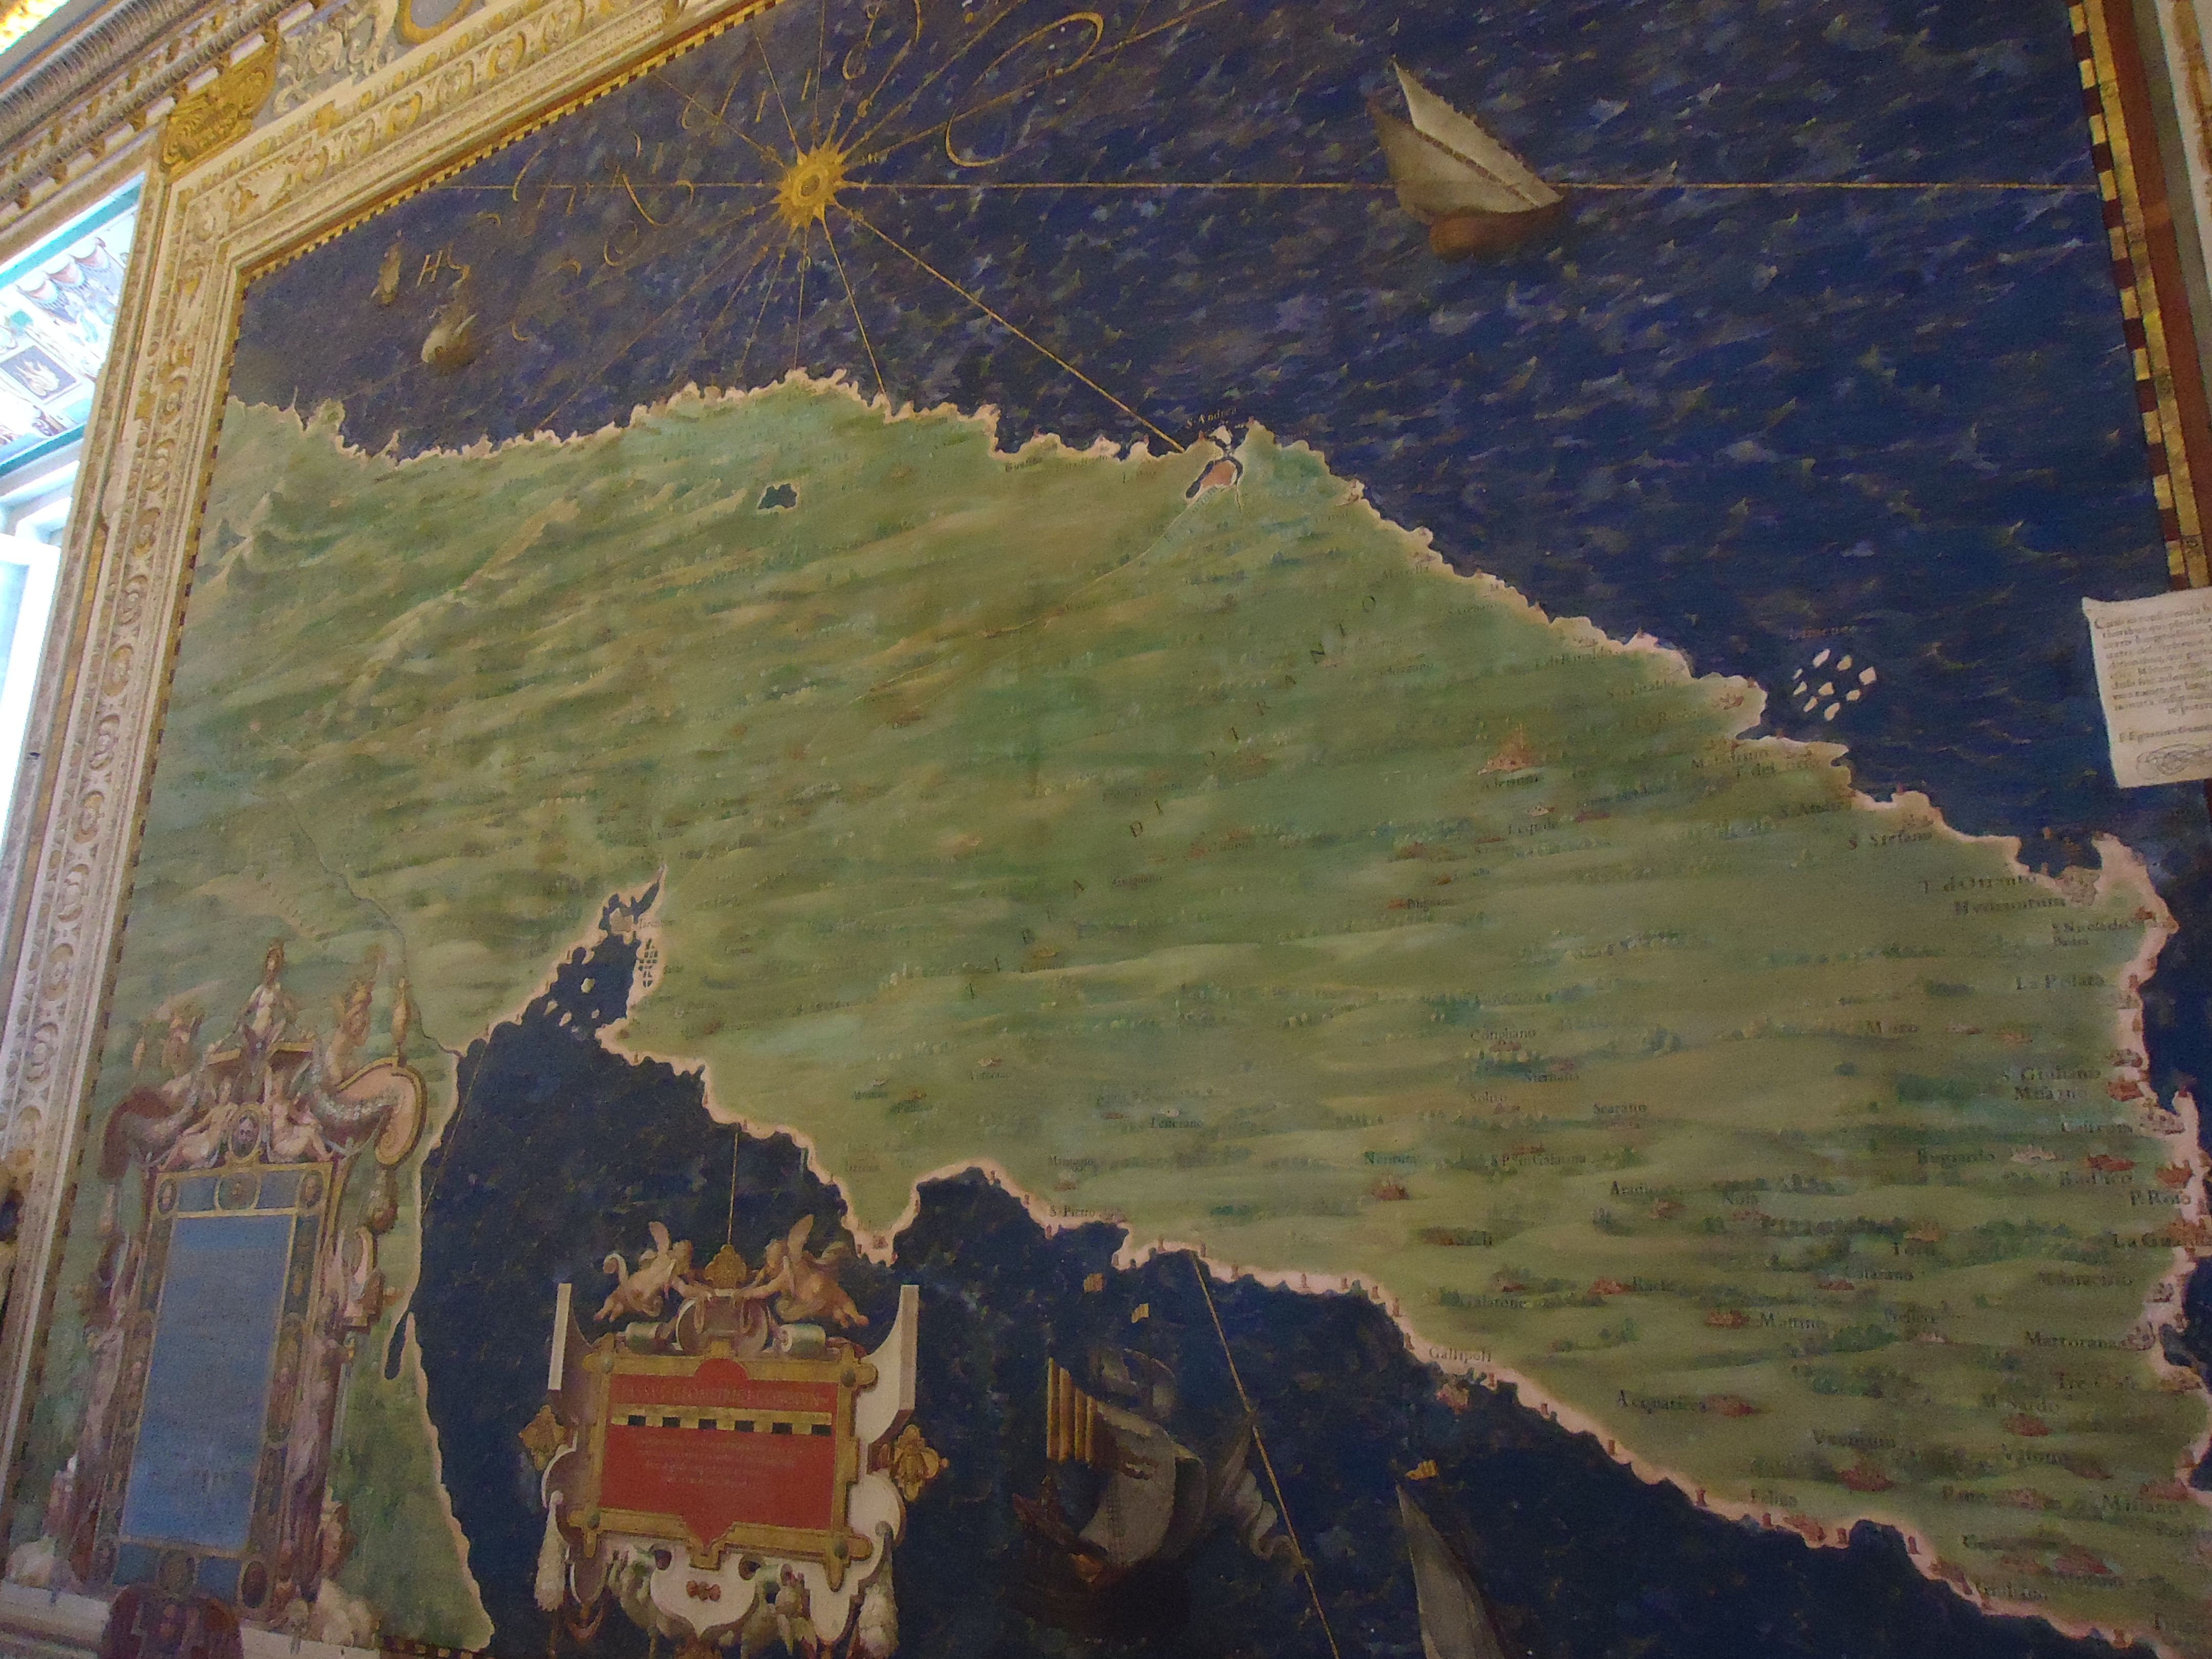 Landkaart in het Vaticaans museum - Rome